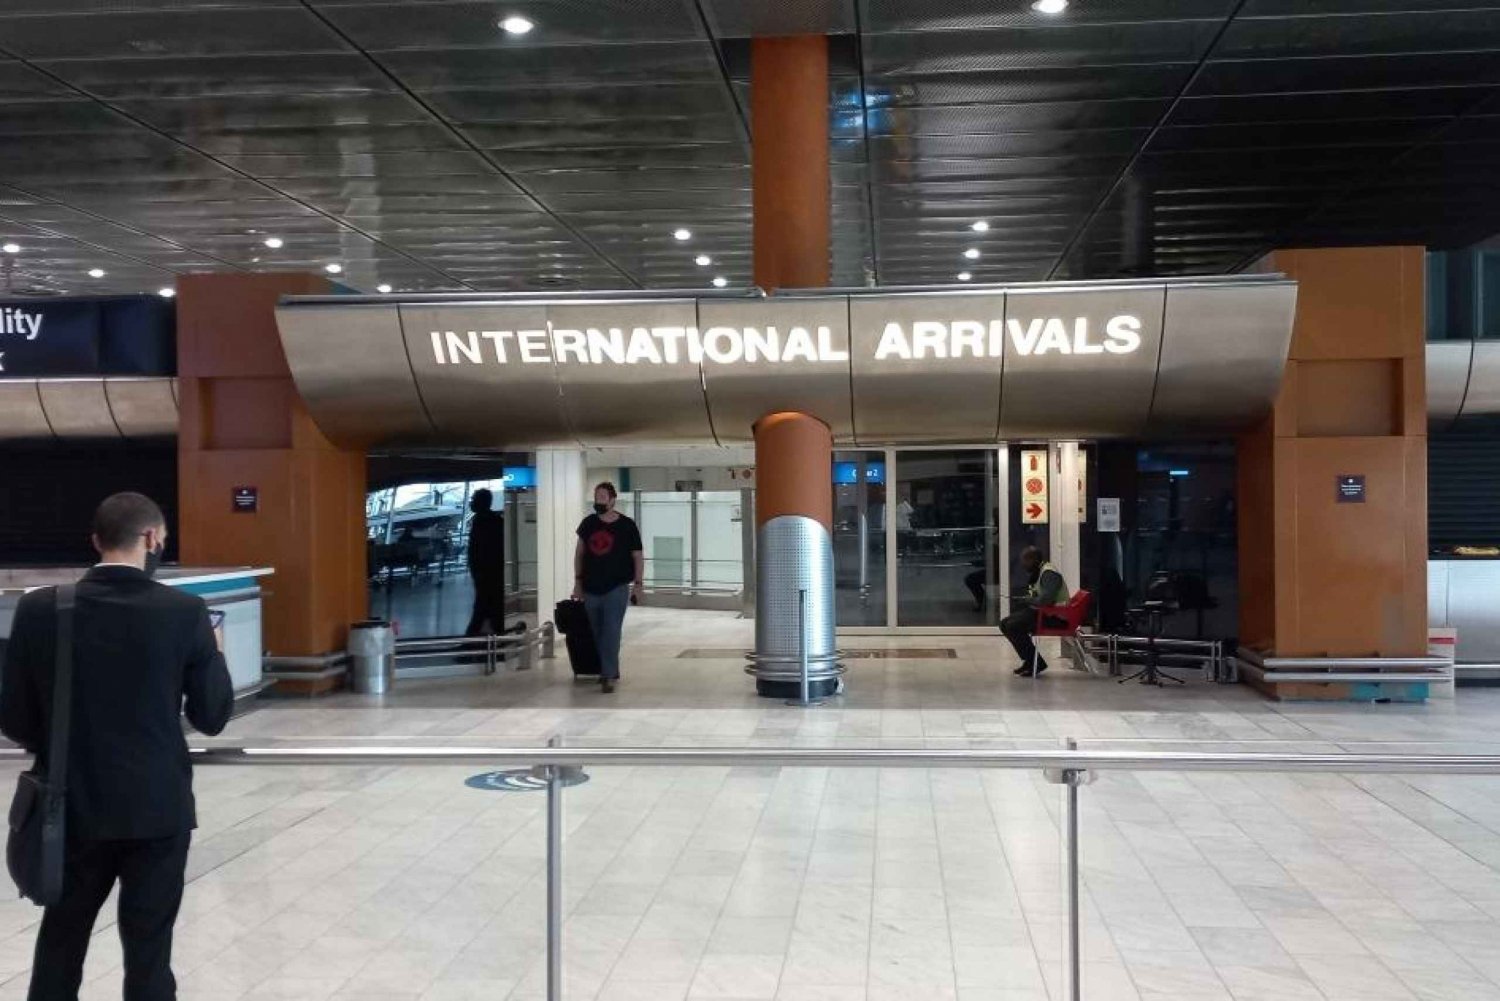 Privat transfer til Cape Towns internationale lufthavn